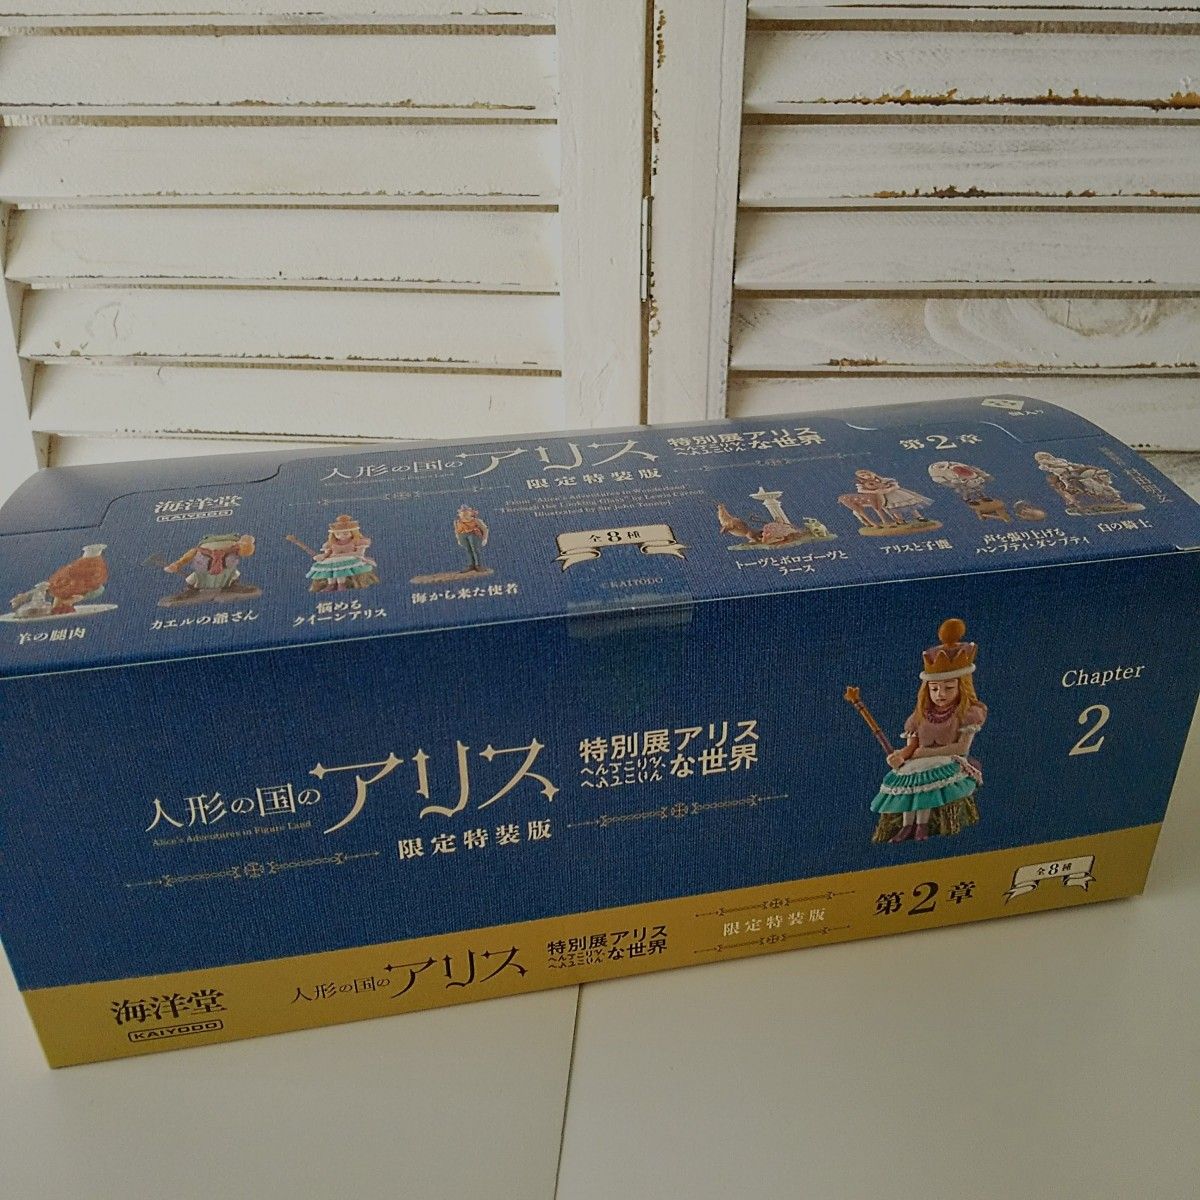 人形の国のアリス 特別展アリス 限定特装版 第2章 海洋堂フィギュアBOX